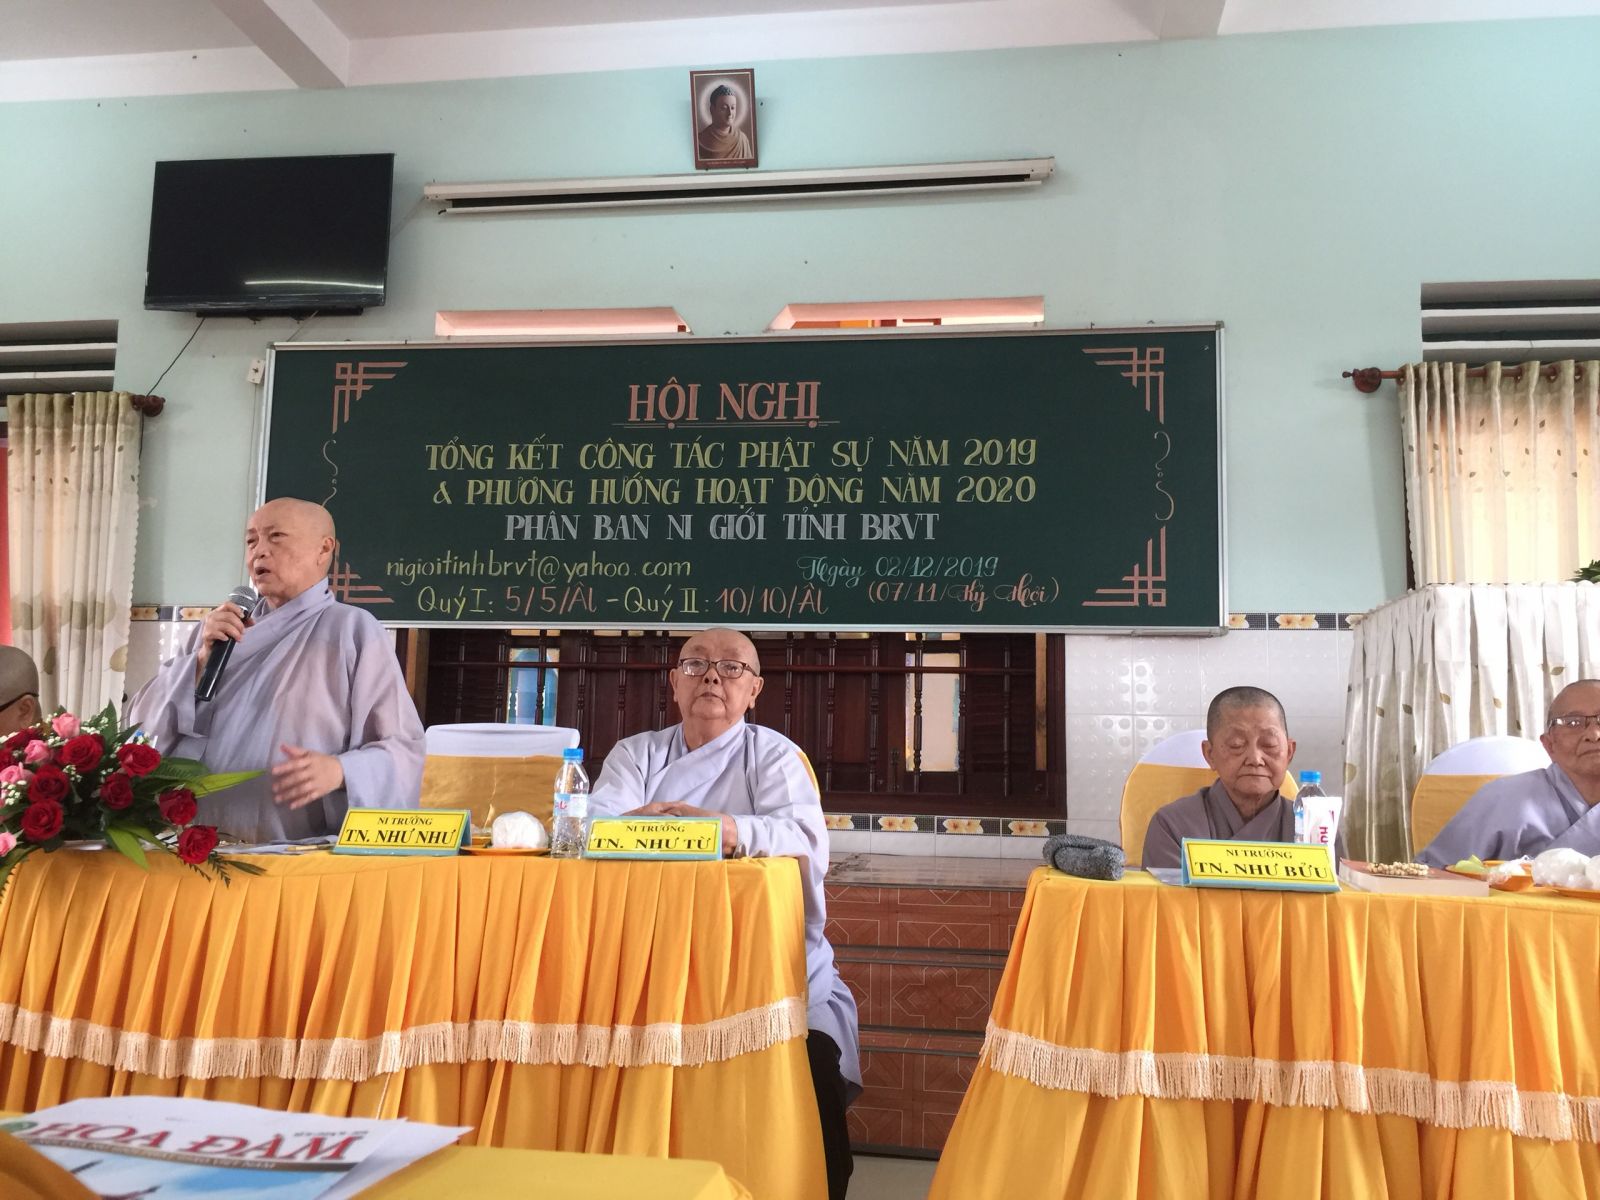 Phân ban Ni Giới tỉnh BR-VT: Hội nghị tổng kết công tác Phật sự 2019 và đề ra phương hướng hoạt động  năm 2020